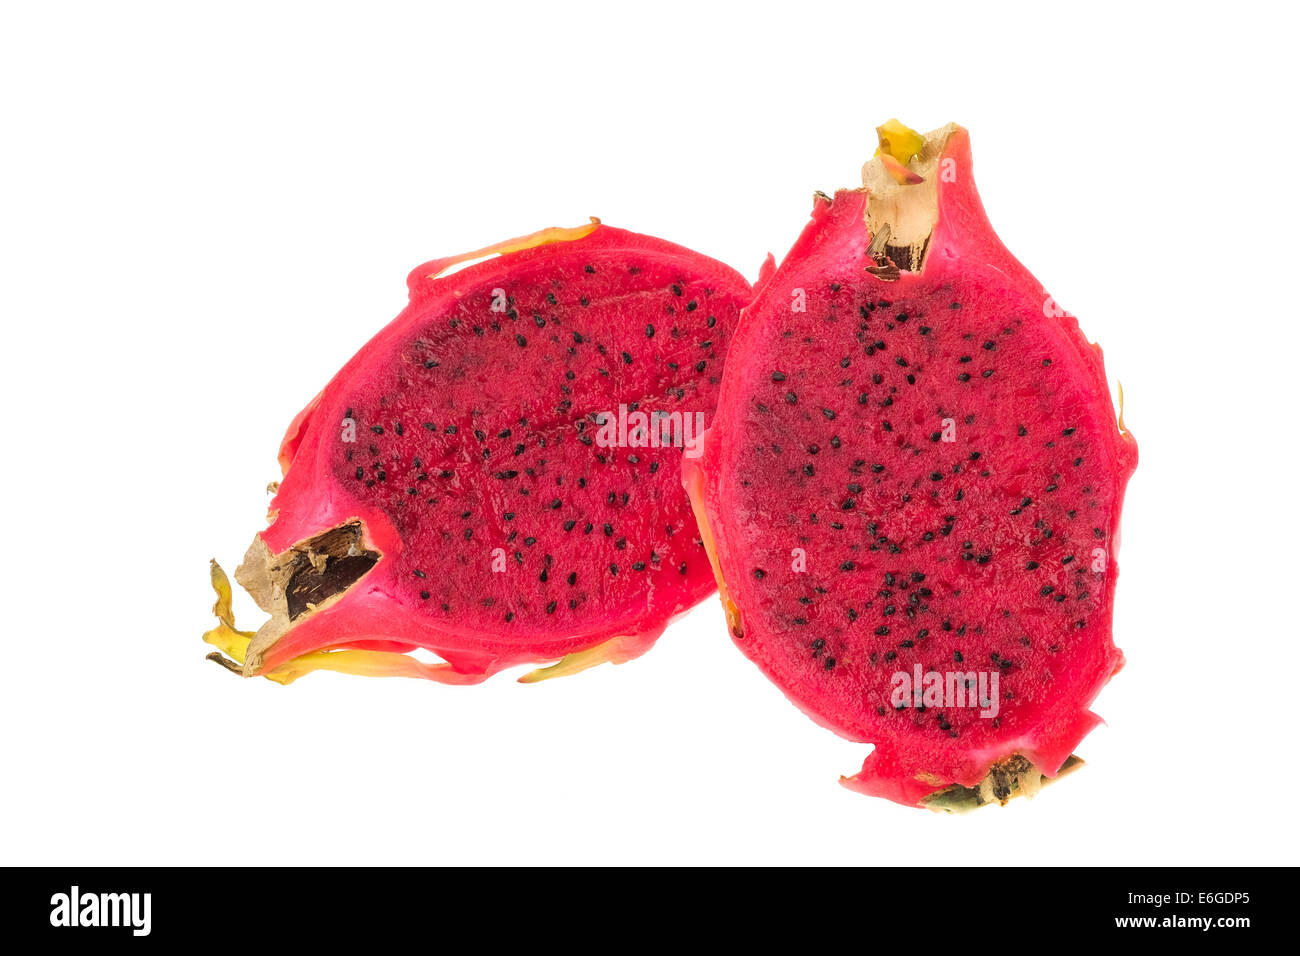 Fruit du dragon avec la chair rouge - studio photo avec un fond blanc Banque D'Images